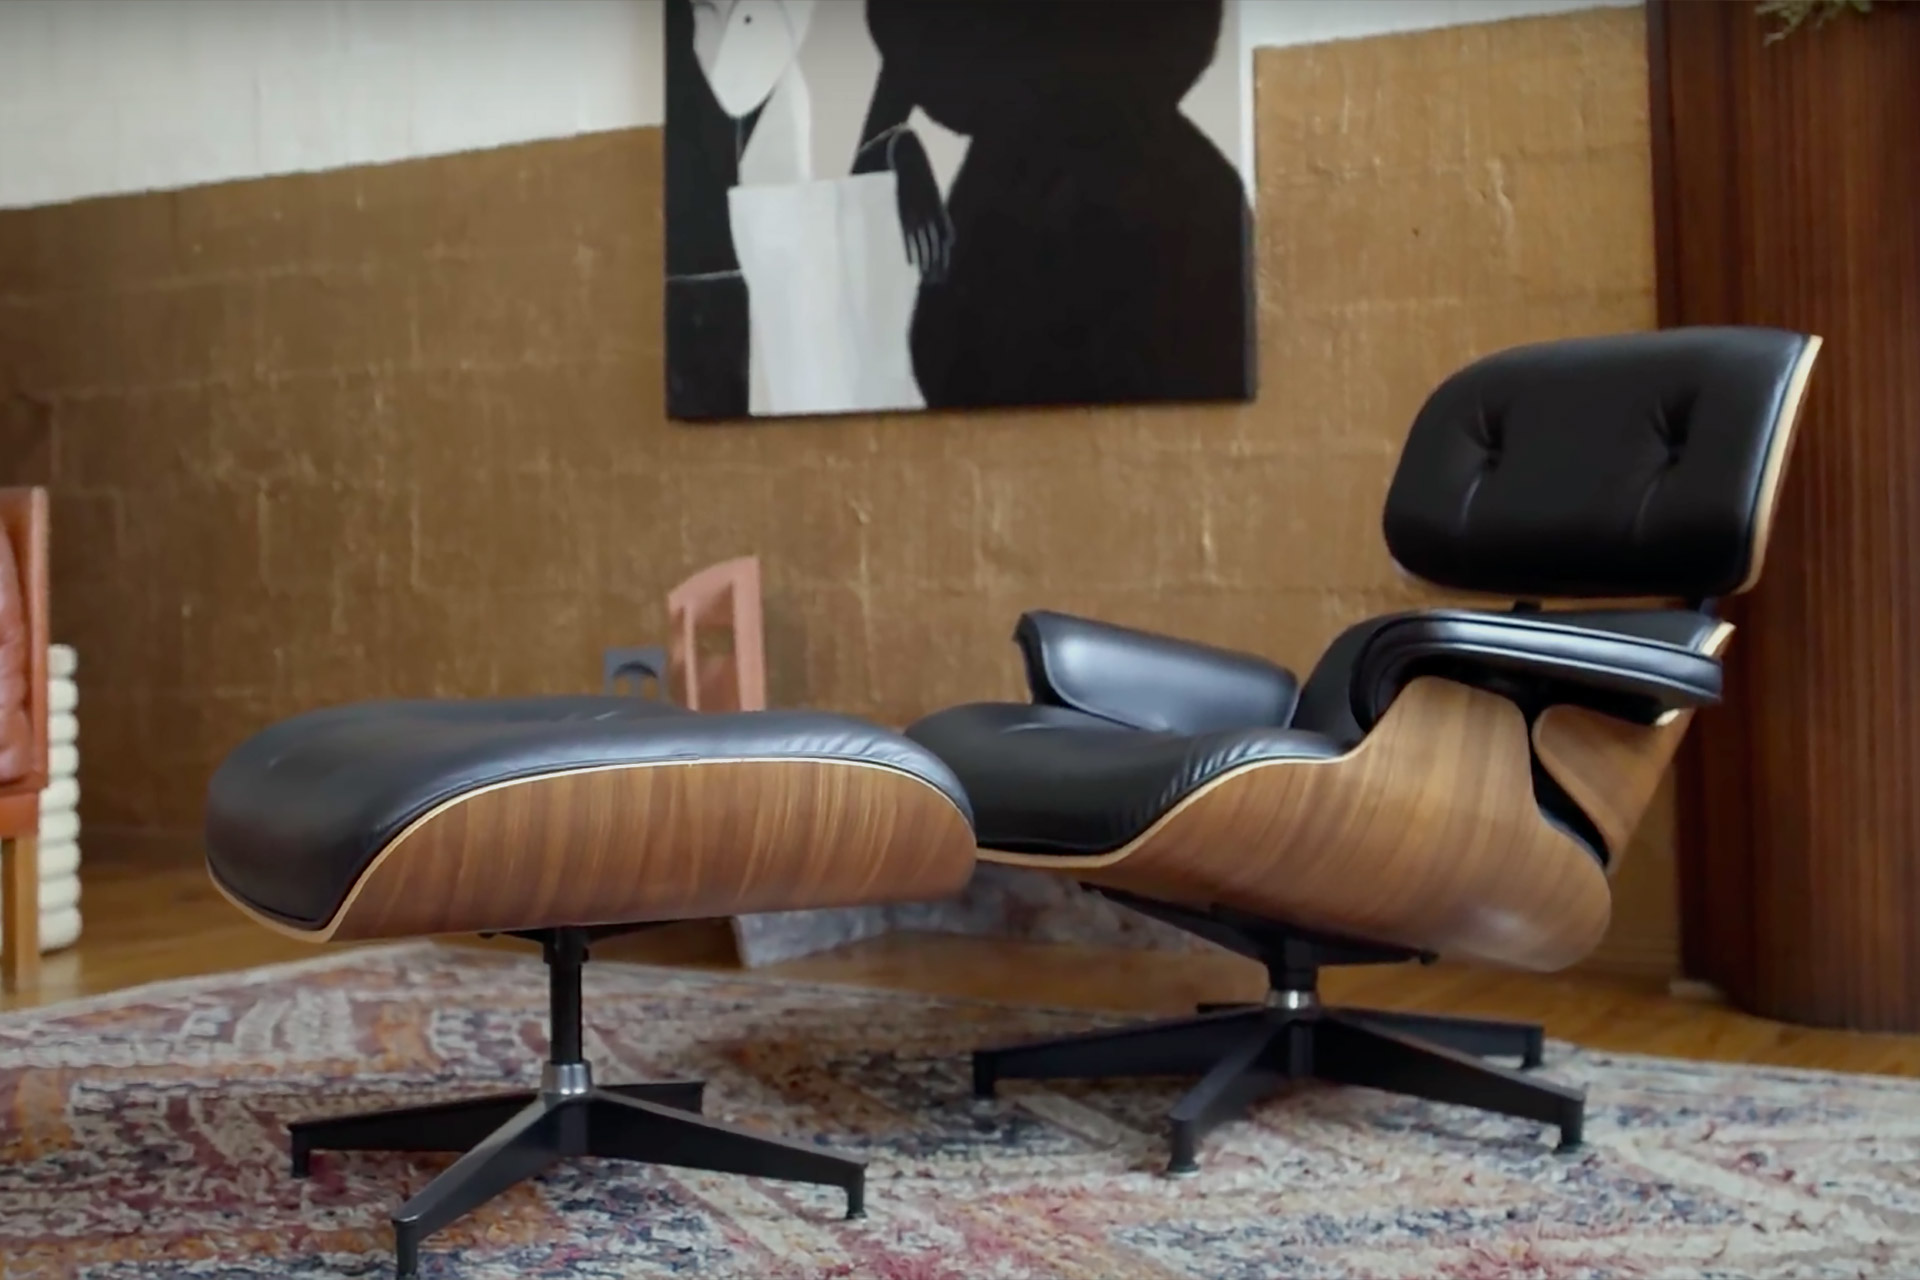 Sluipmoordenaar Afzonderlijk schandaal A Love Letter to the Eames Lounge Chair | Uncrate